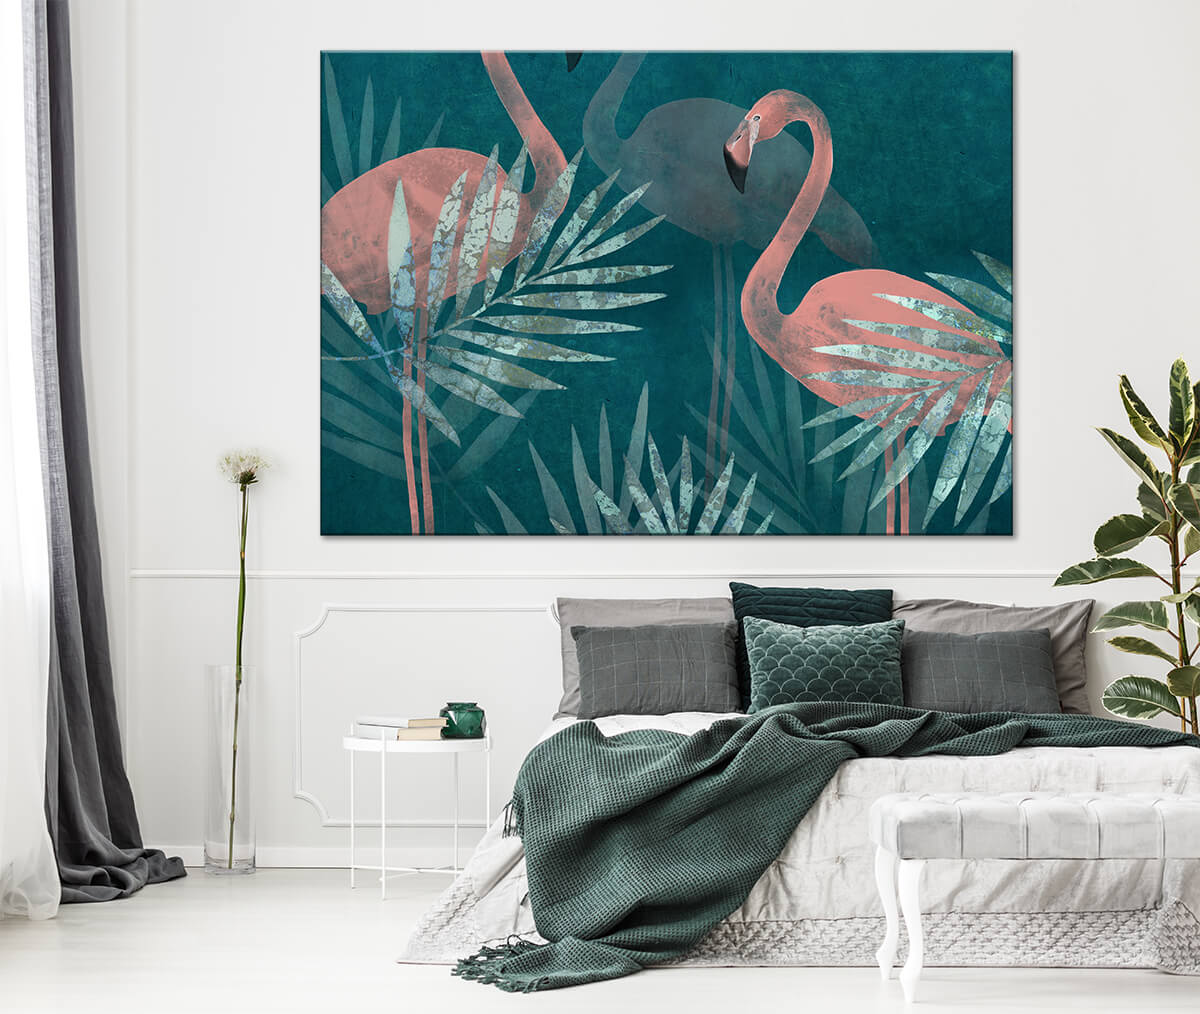 Wnętrze nowoczesnej sypialni z dodatkami w kolorze turkusu i zieleni na ścianie obraz w palmy i flamingi